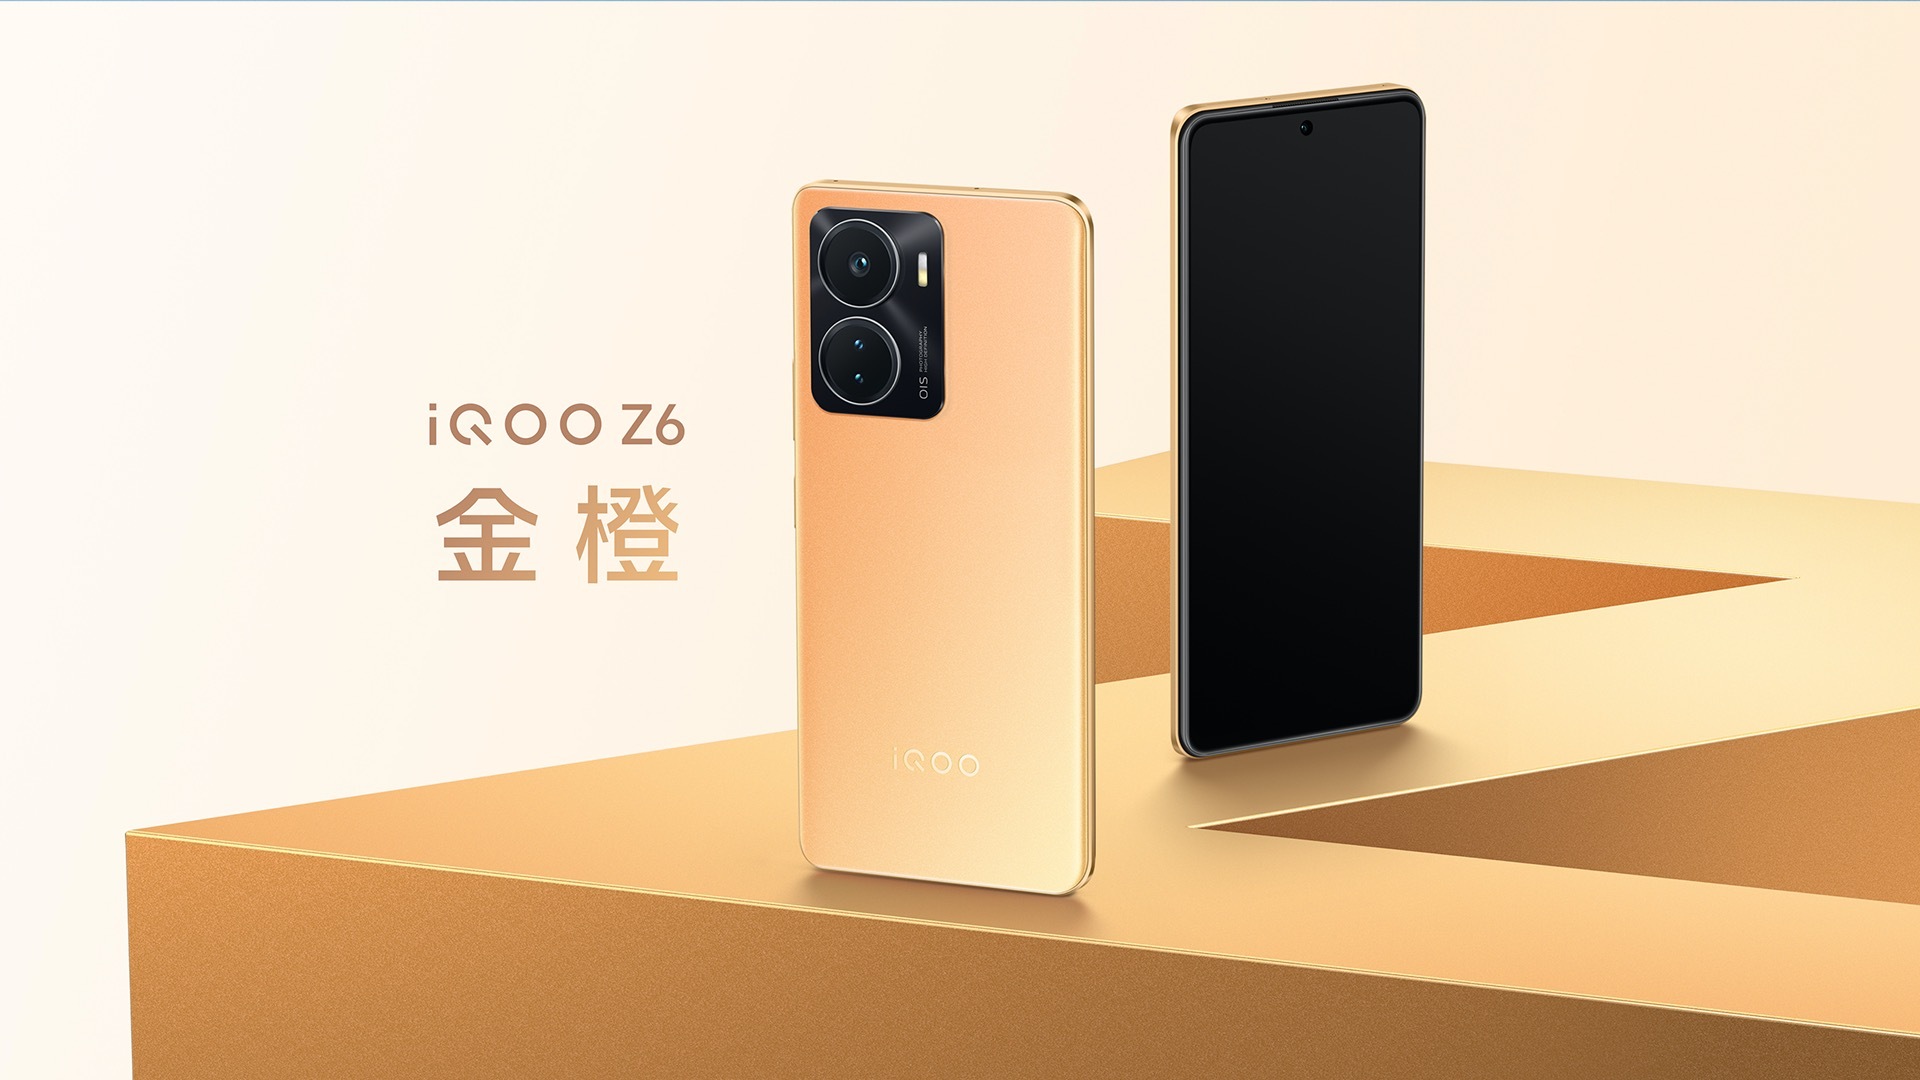 iQOO Z6 став найпотужнішим у світі недорогим смартфоном за версією AnTuTu - у топ-3 є Honor і Xiaomi